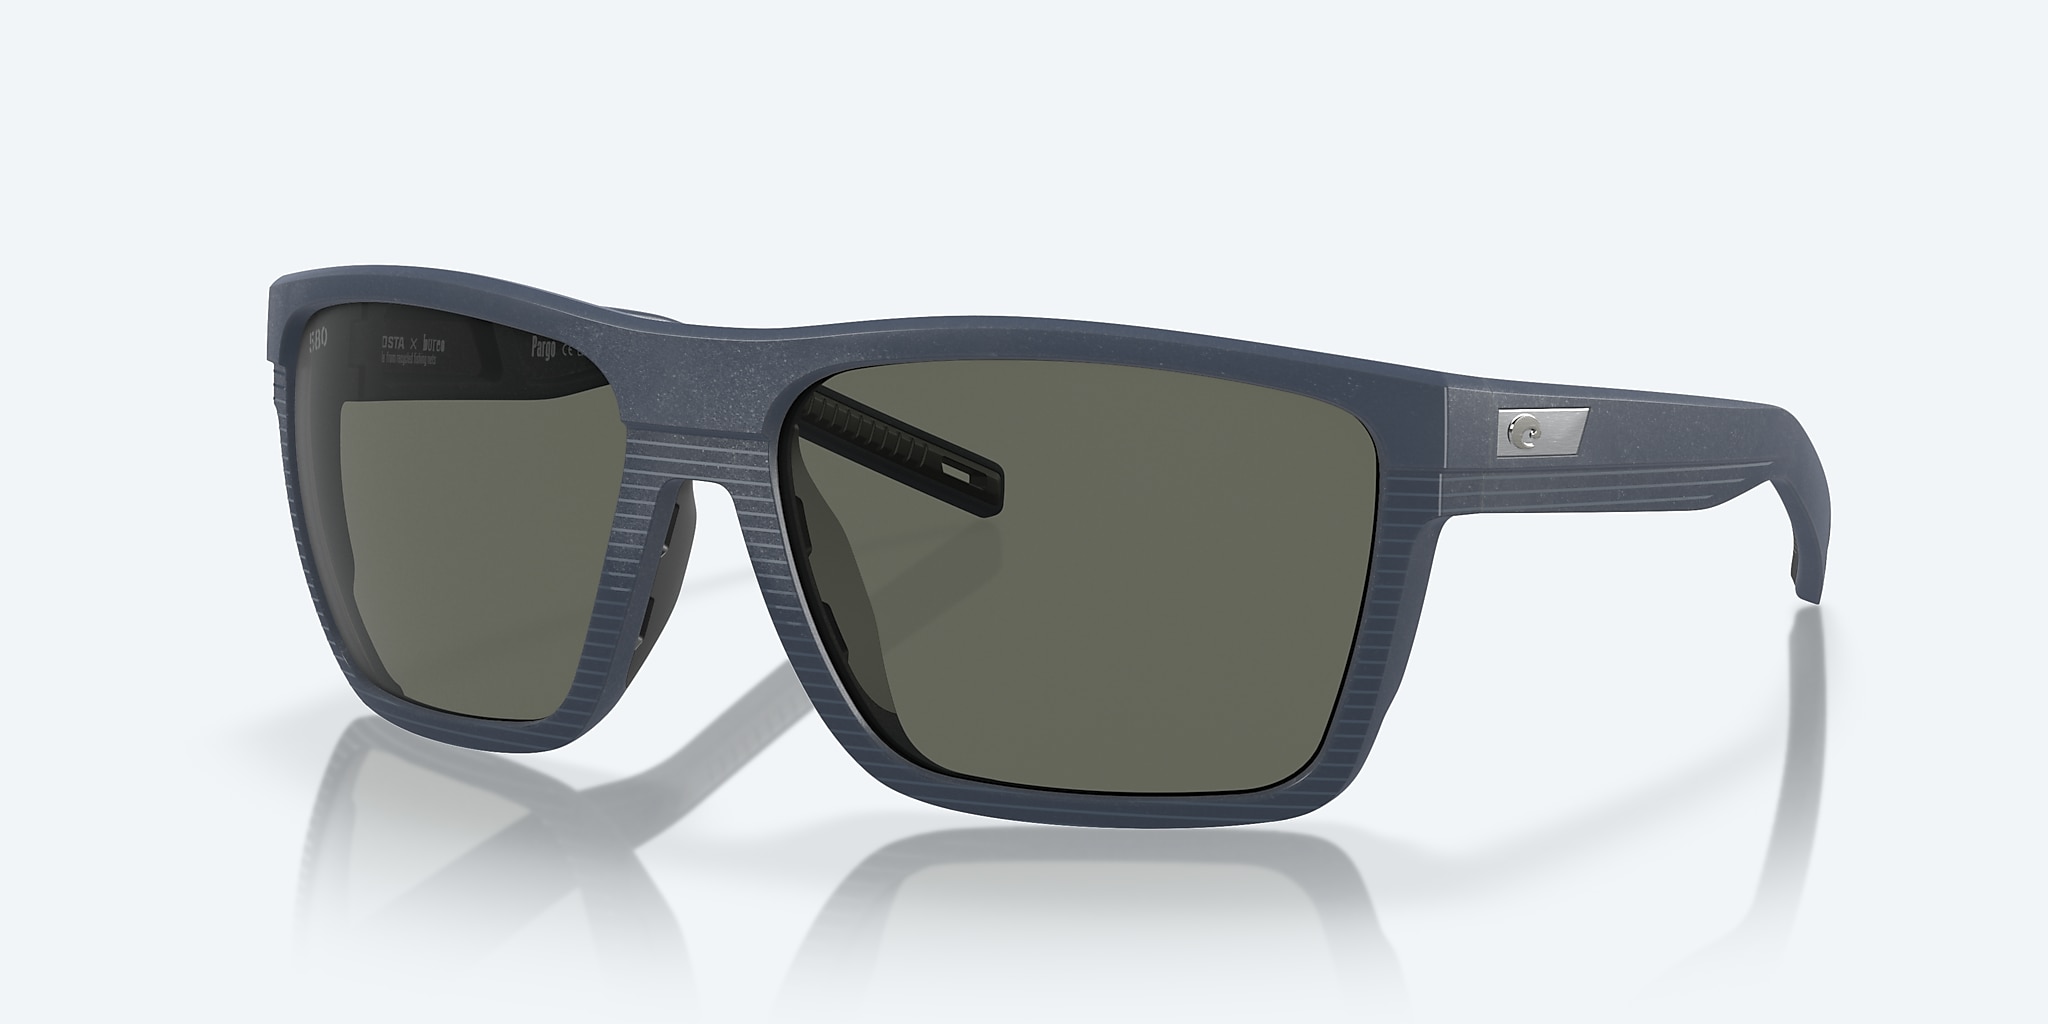 Costa Del Mar Pargo Sunglasses - Net Midnight Blue / Gray 580G